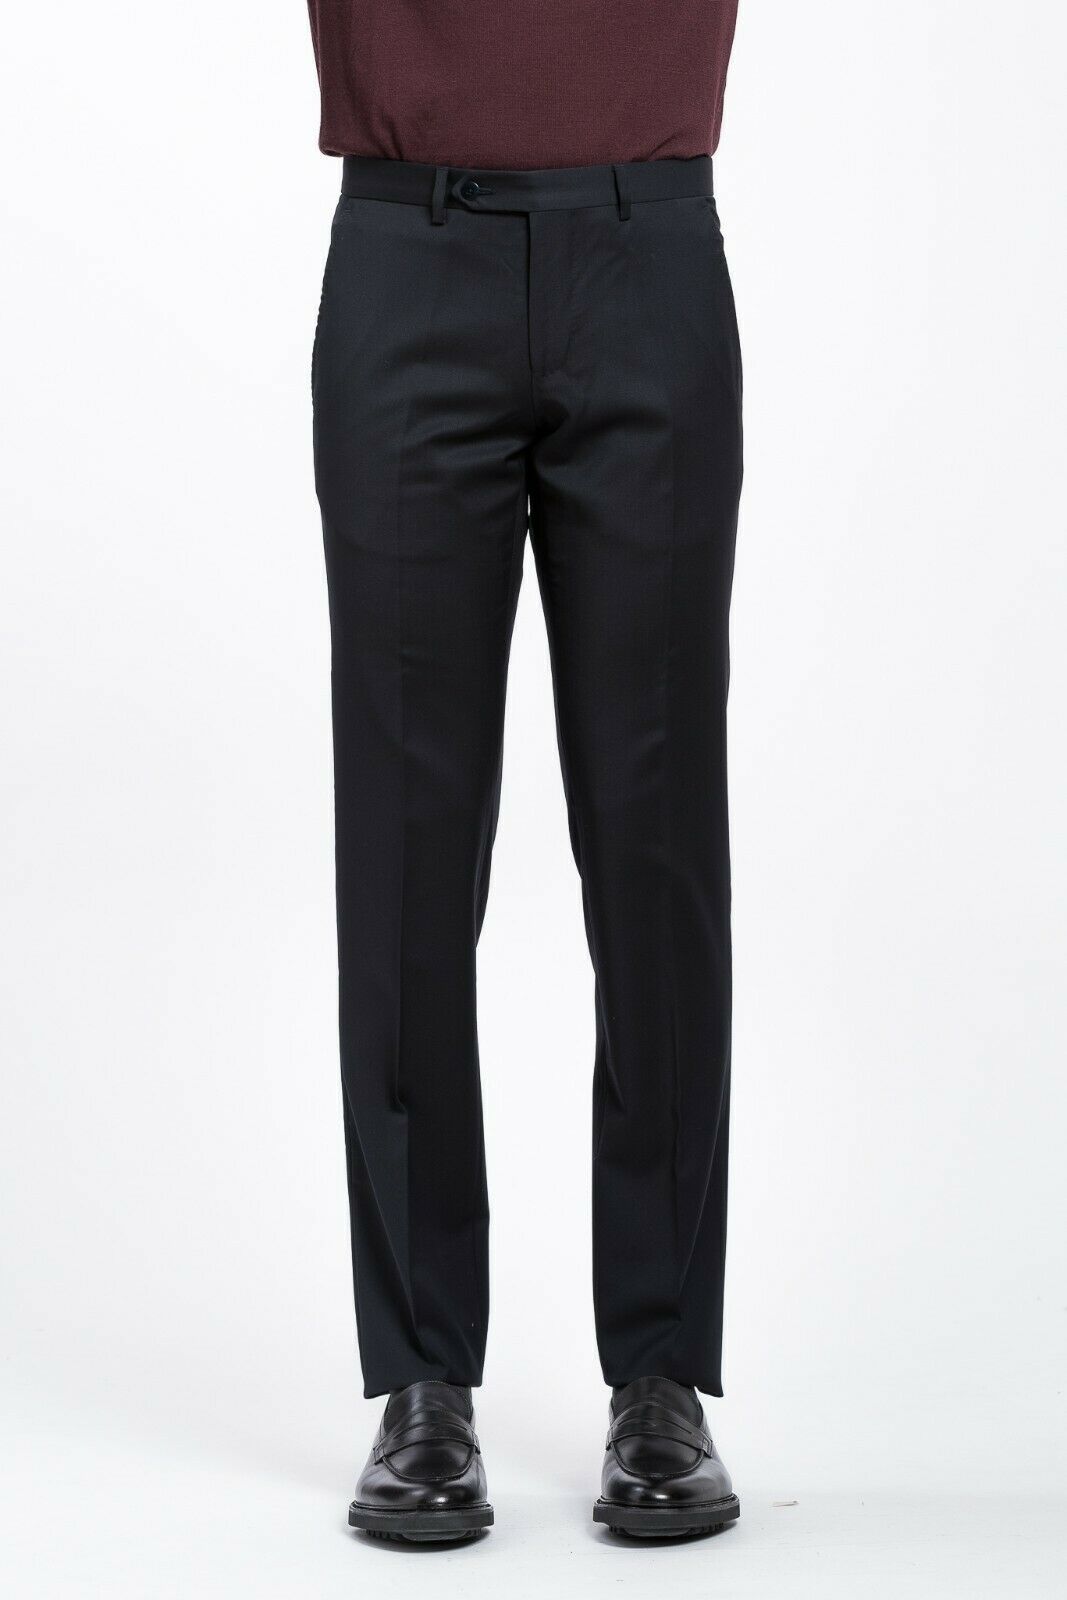 275$ TOMBOLINI Blue Midnight Trousers Sartorial Dress Pants Fine Wool ...